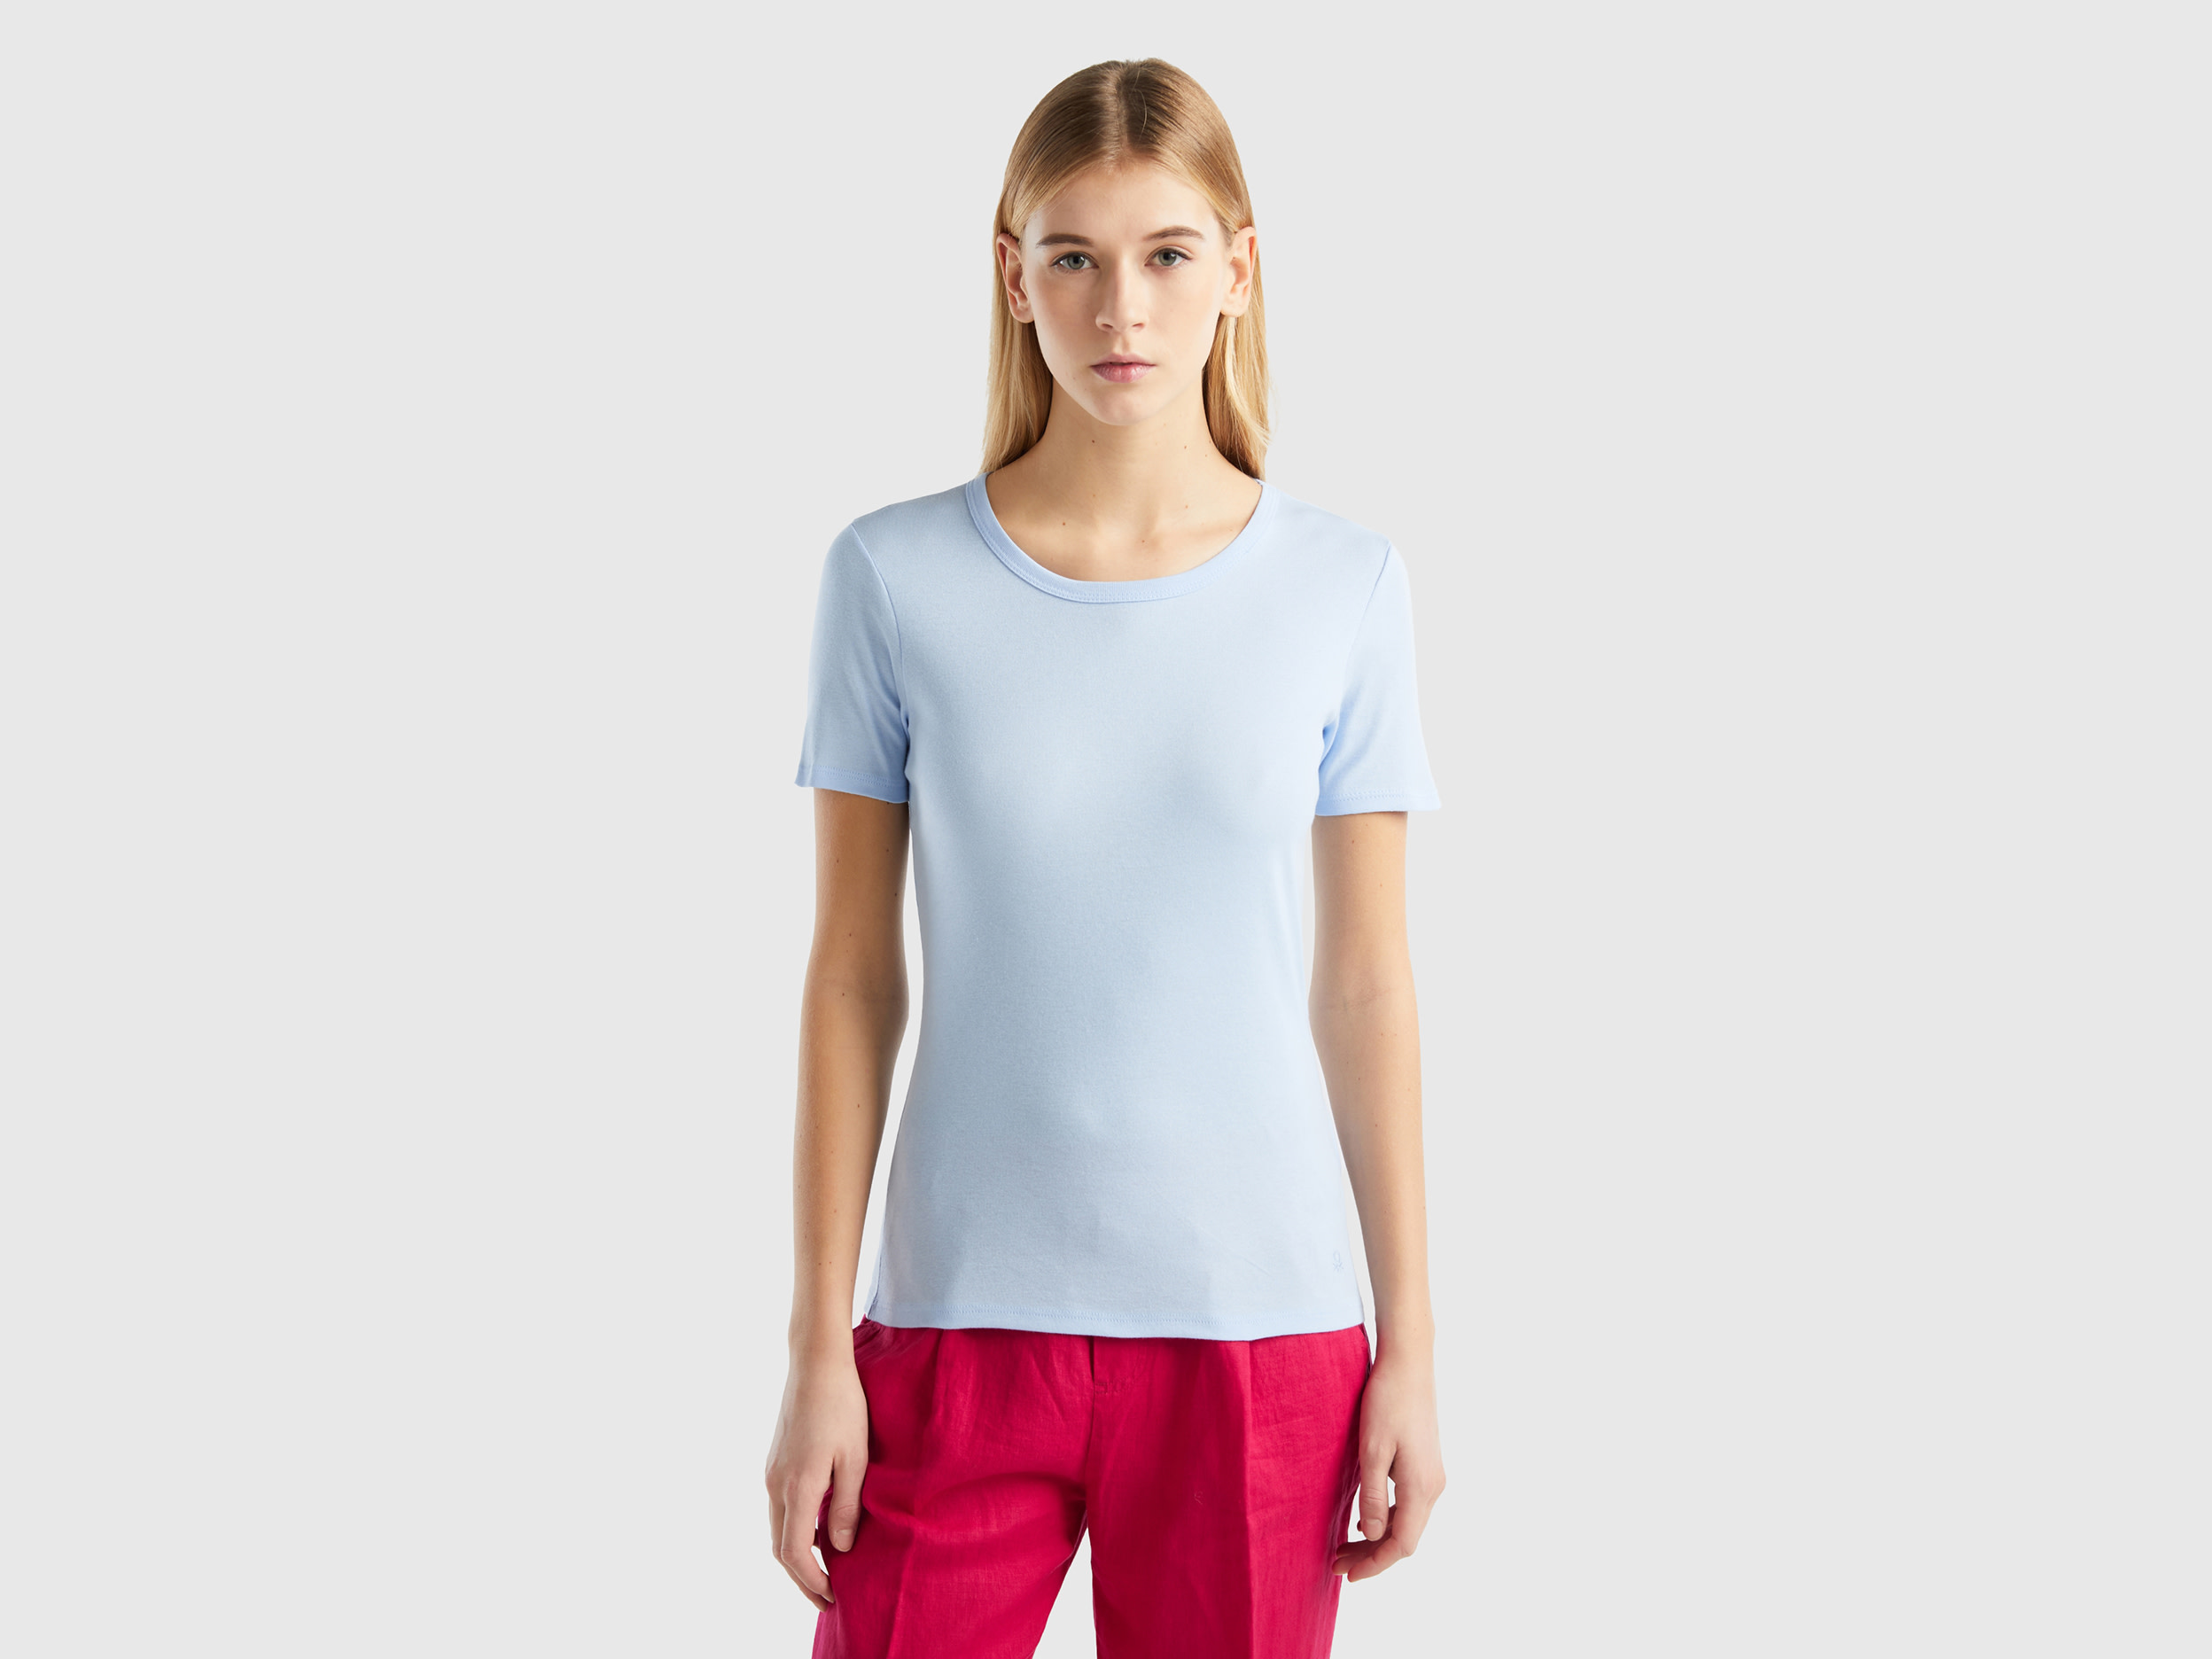 Benetton, Long Fiber Cotton T-shirt, size XXS, Sky Blue, Women